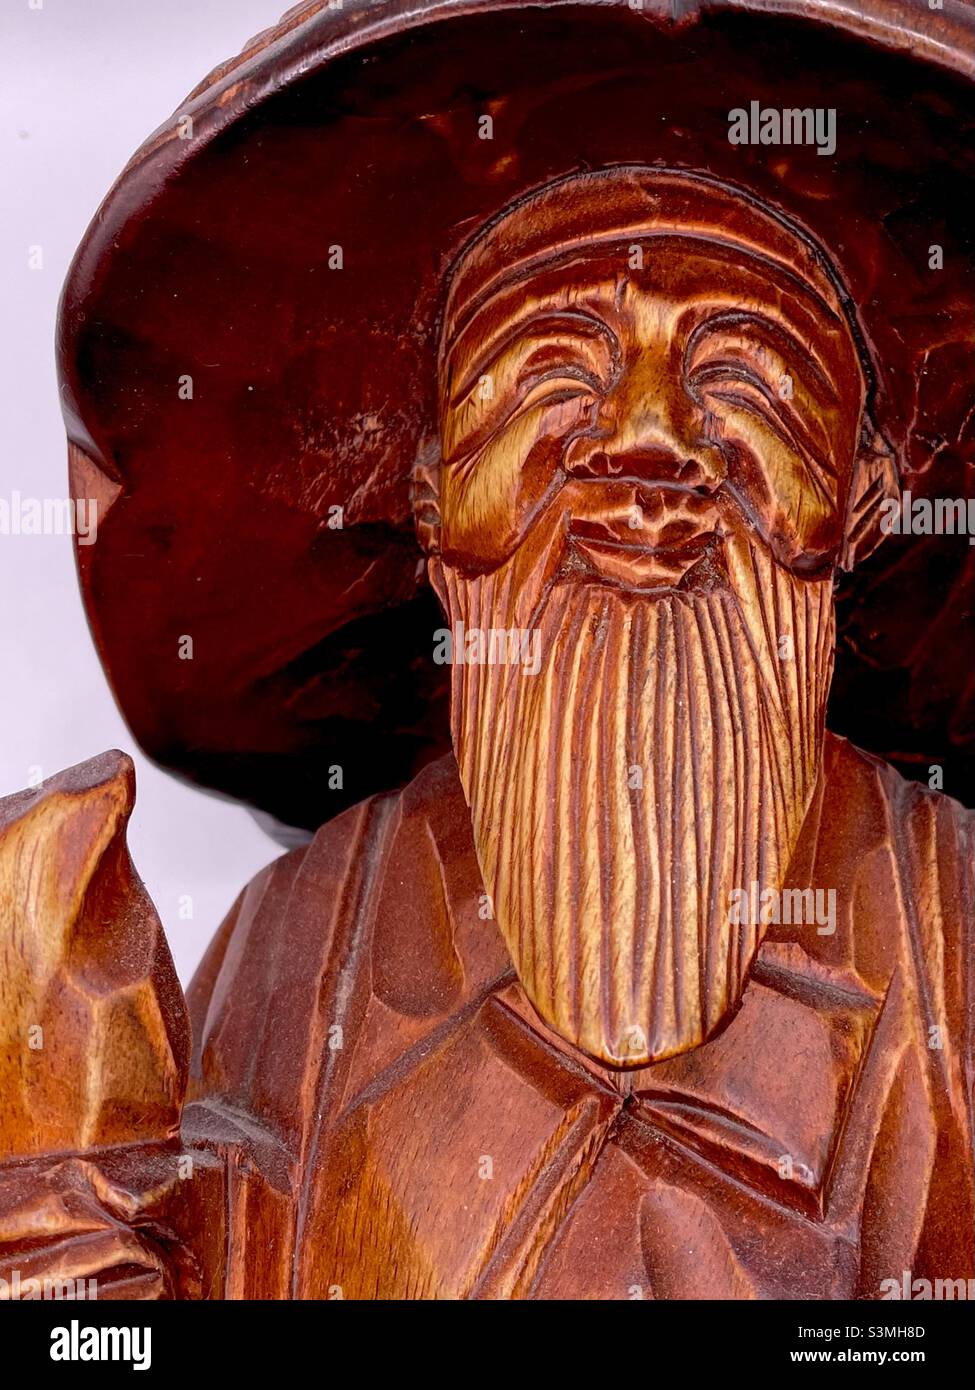 Estatua tallada en madera coreana de anciano o monje viajero con barba, sombrero y sonrisa Foto de stock